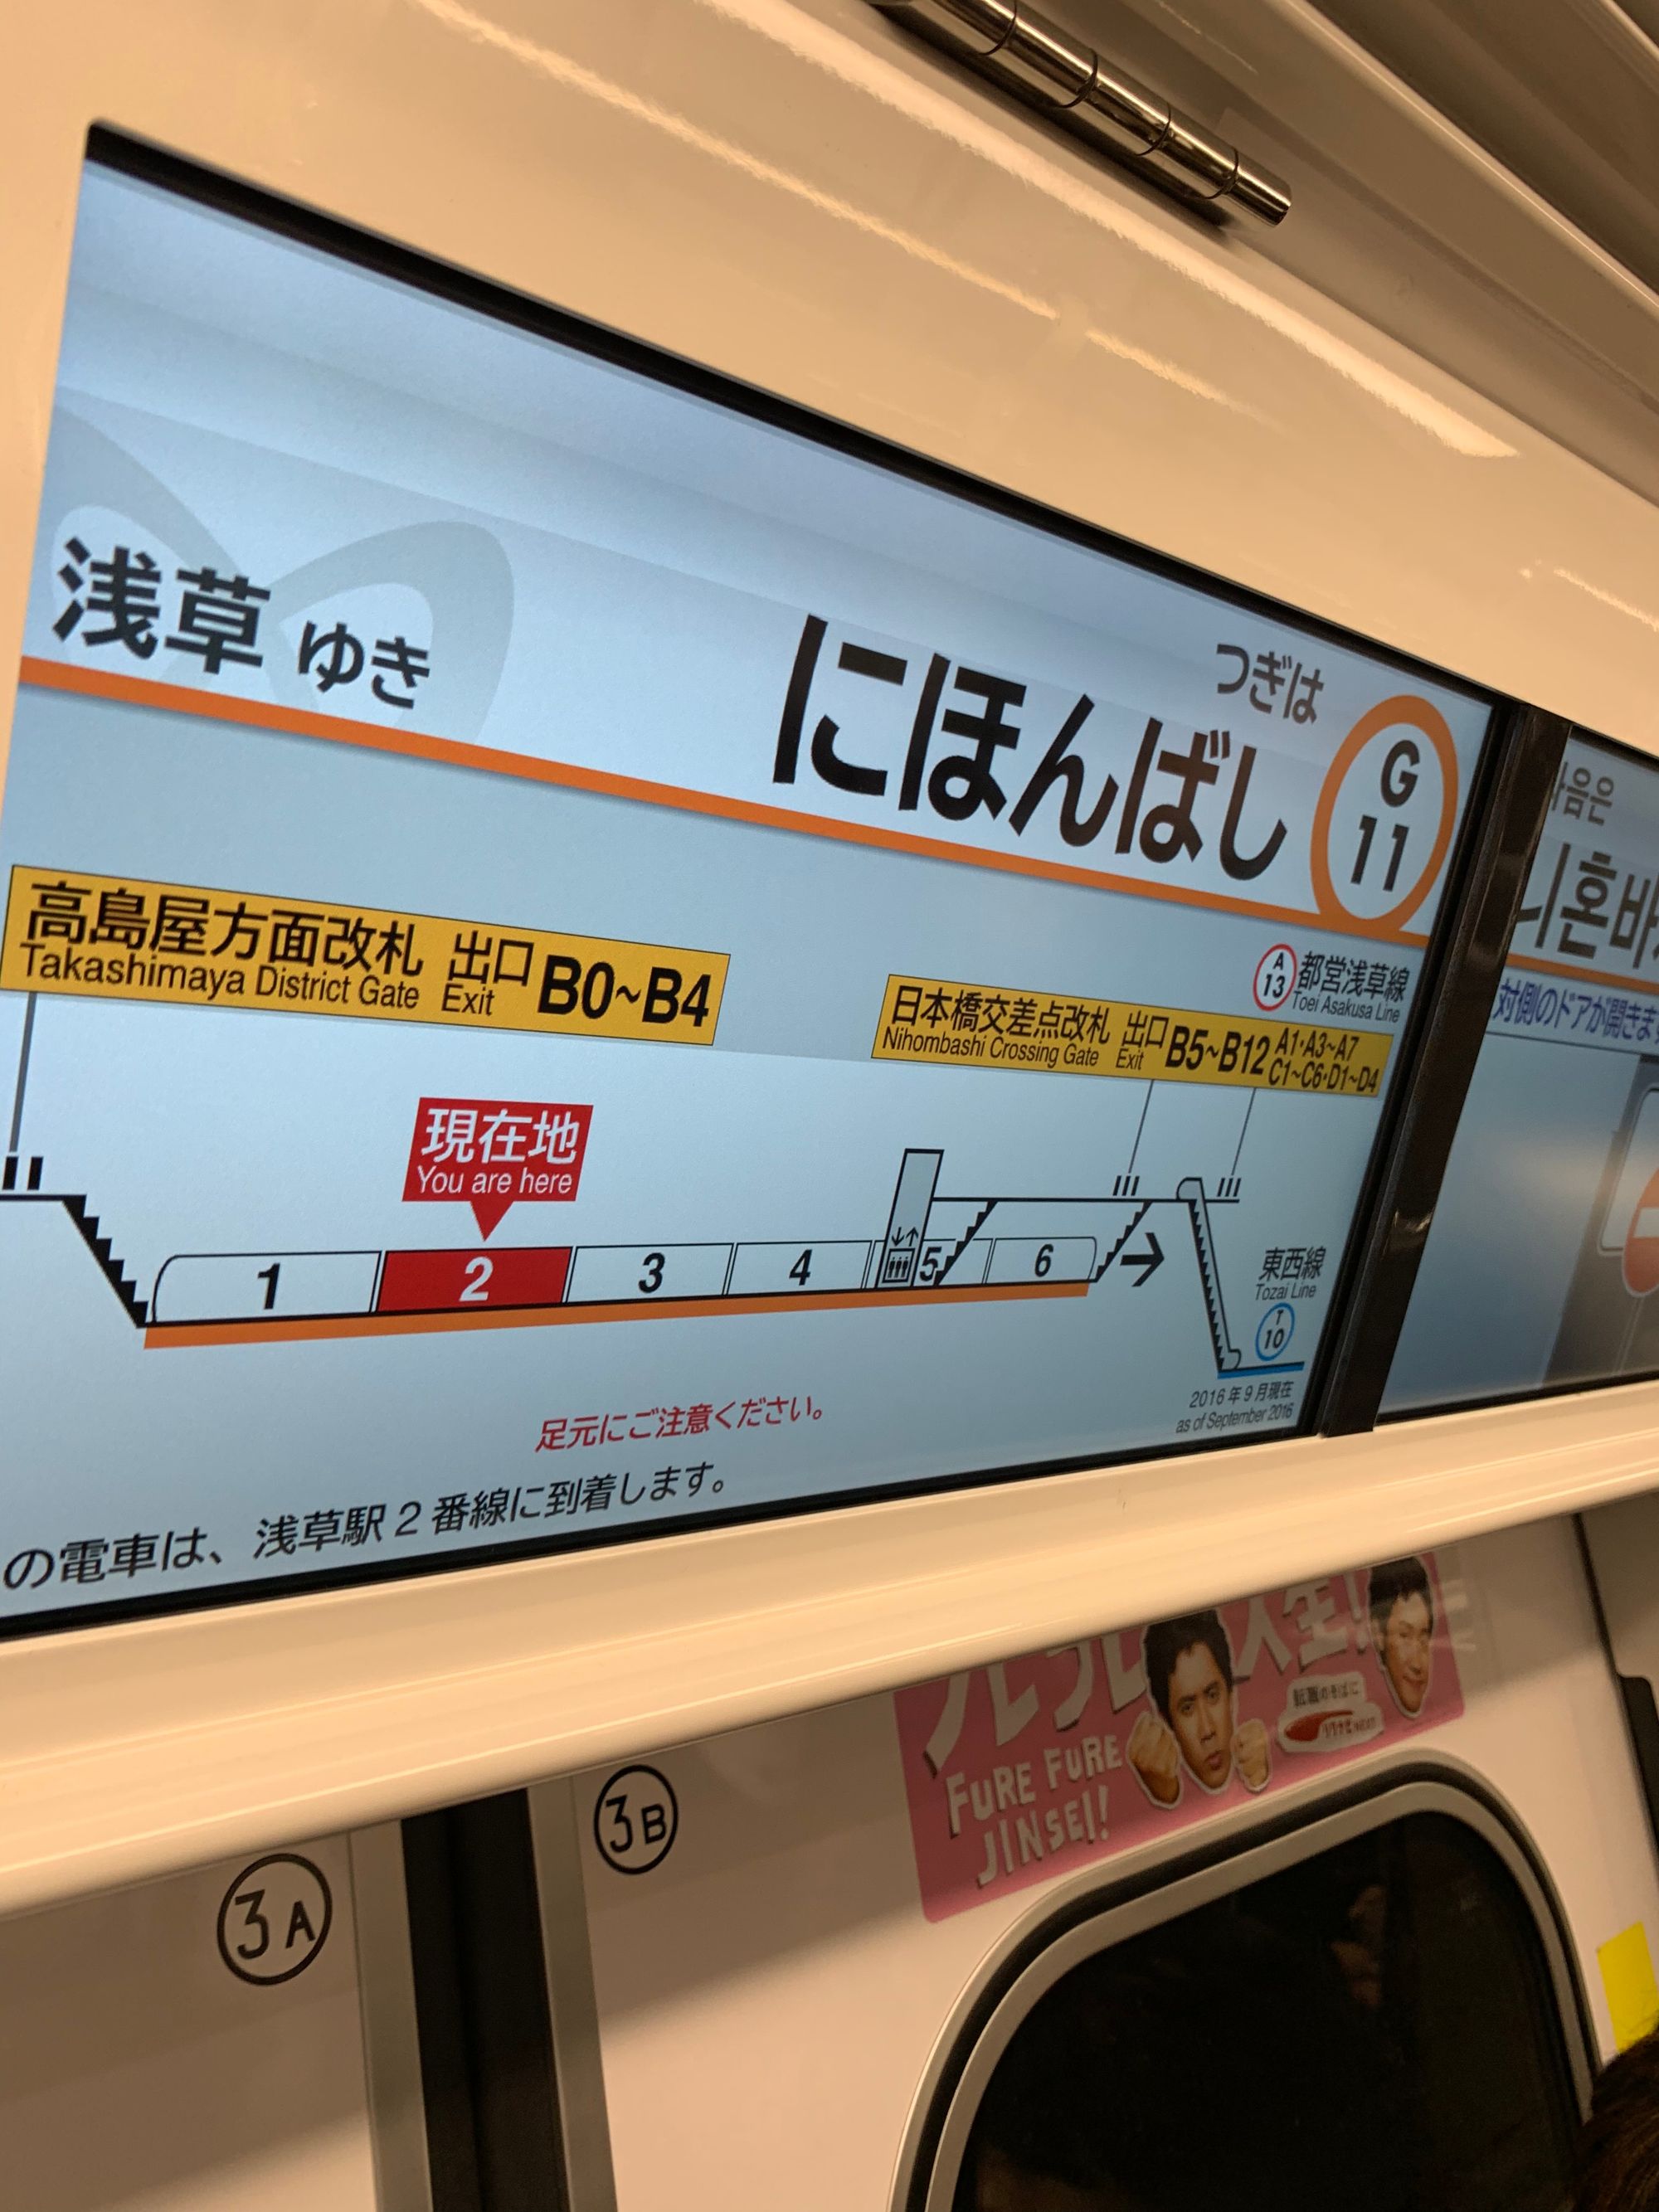 2018年的时候东京地铁就已经有很大的 LED 报站屏了，UI / UX 也值得中国的同行学习。